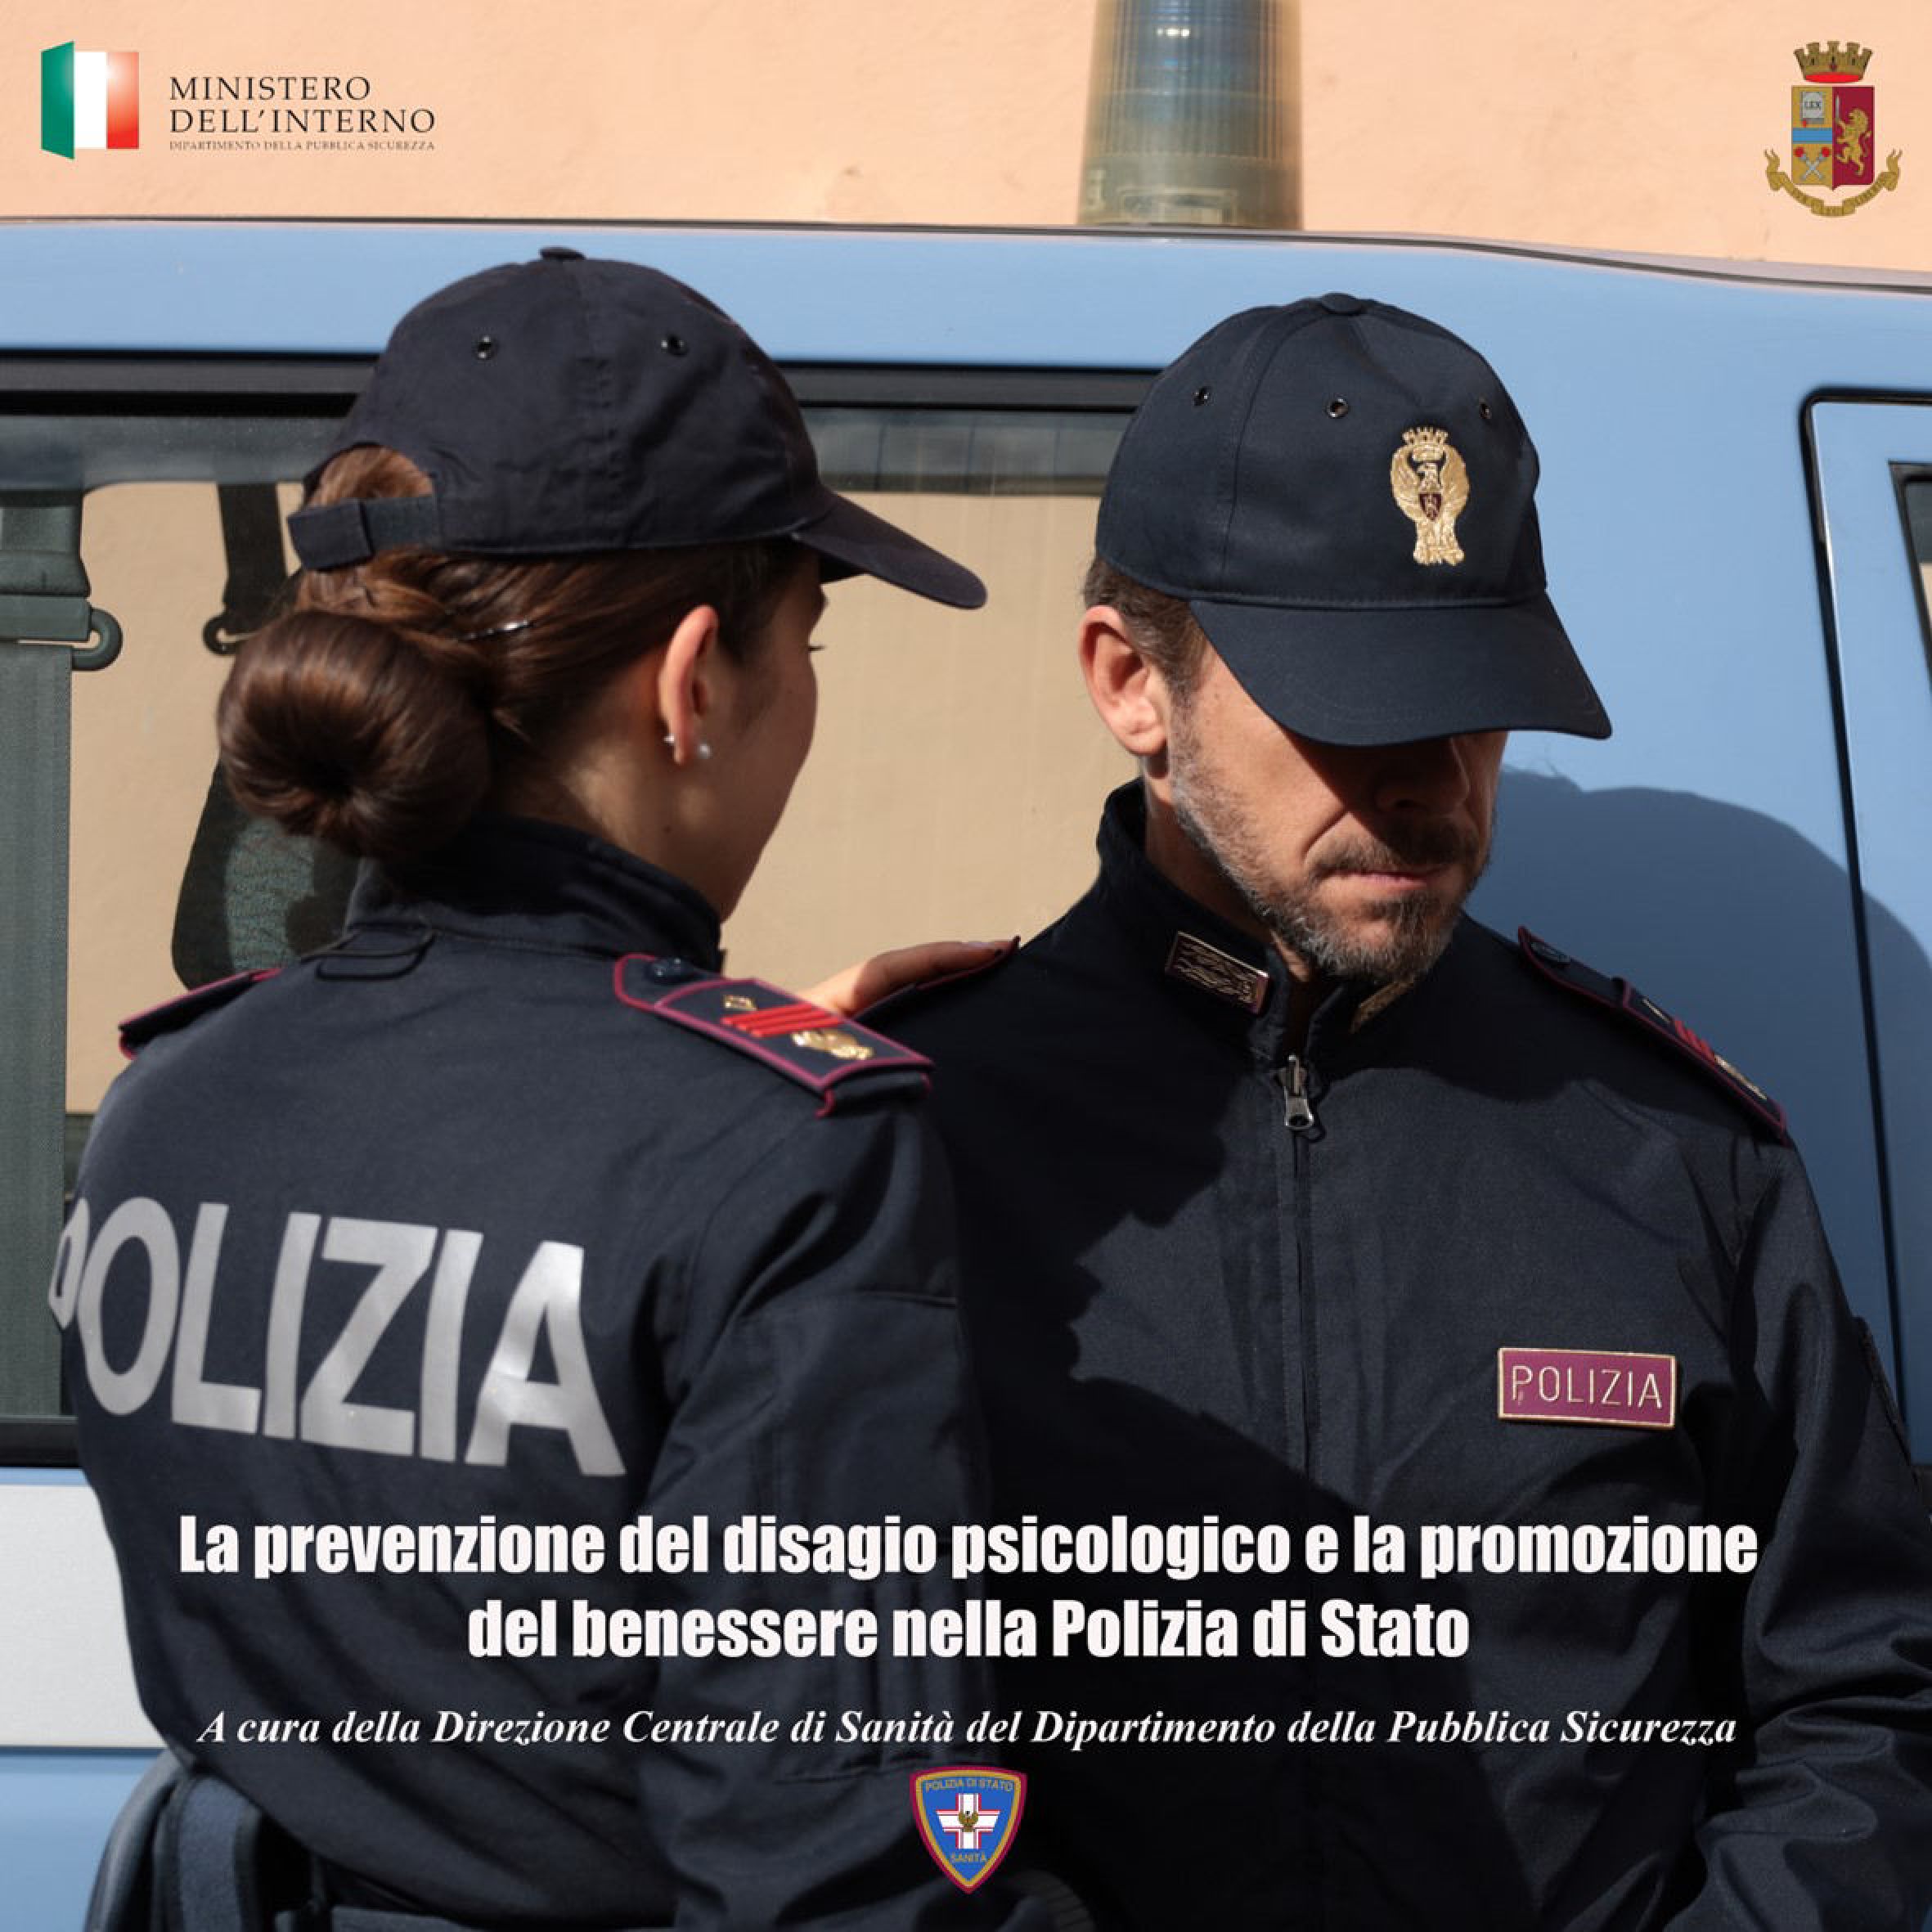 La prevenzione del disagio psicologico e la promozione  del benessere nella Polizia di Stato